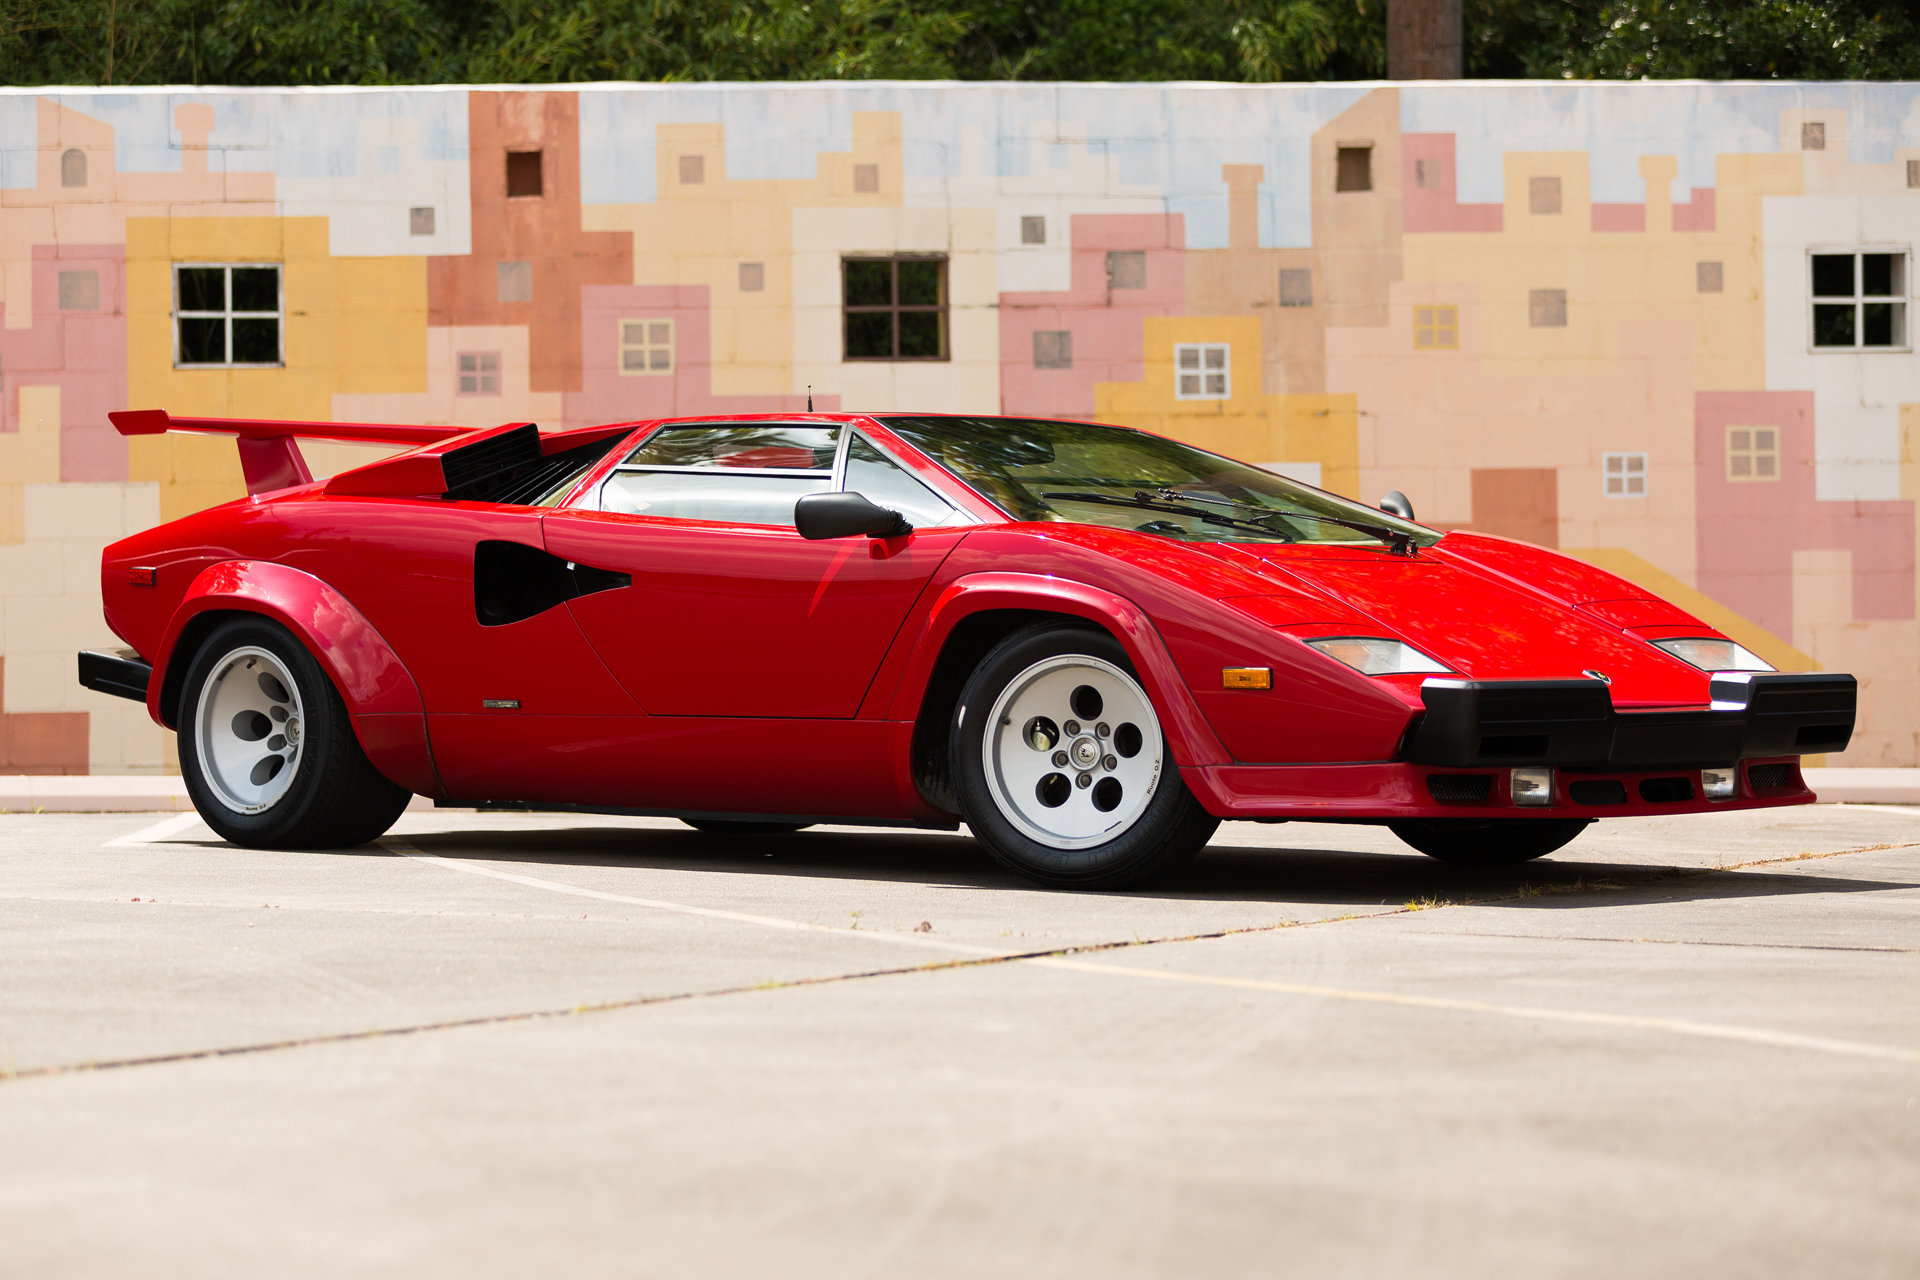 Tohle Lamborghini Countach vypadá stále jako nové, ačkoliv bylo vyrobeno již v roce 1987